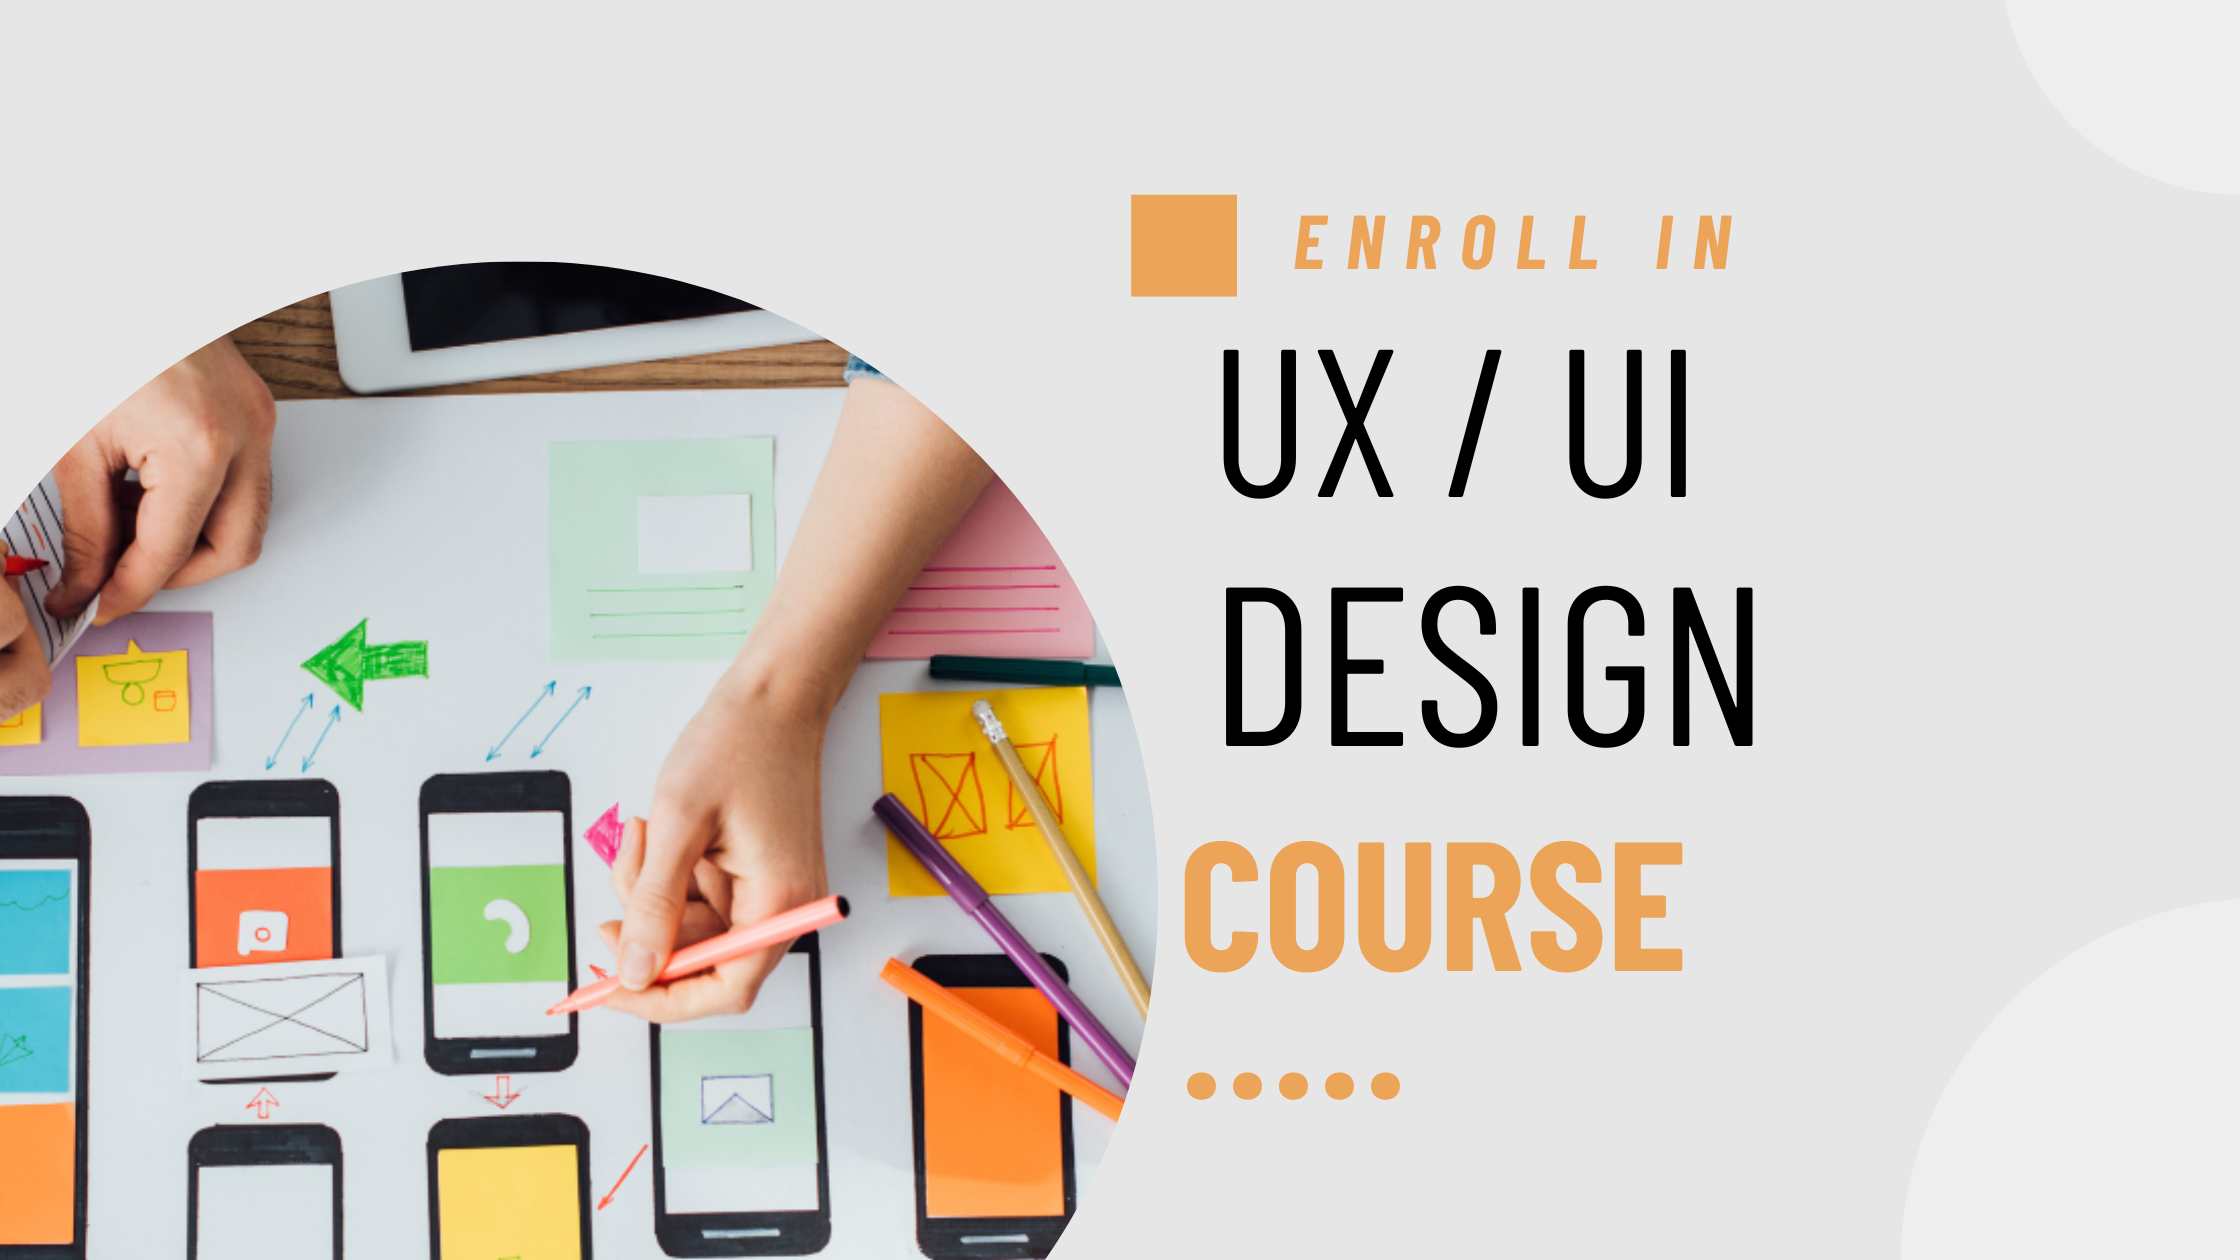 UX / UI Design: a top tech skill in demand